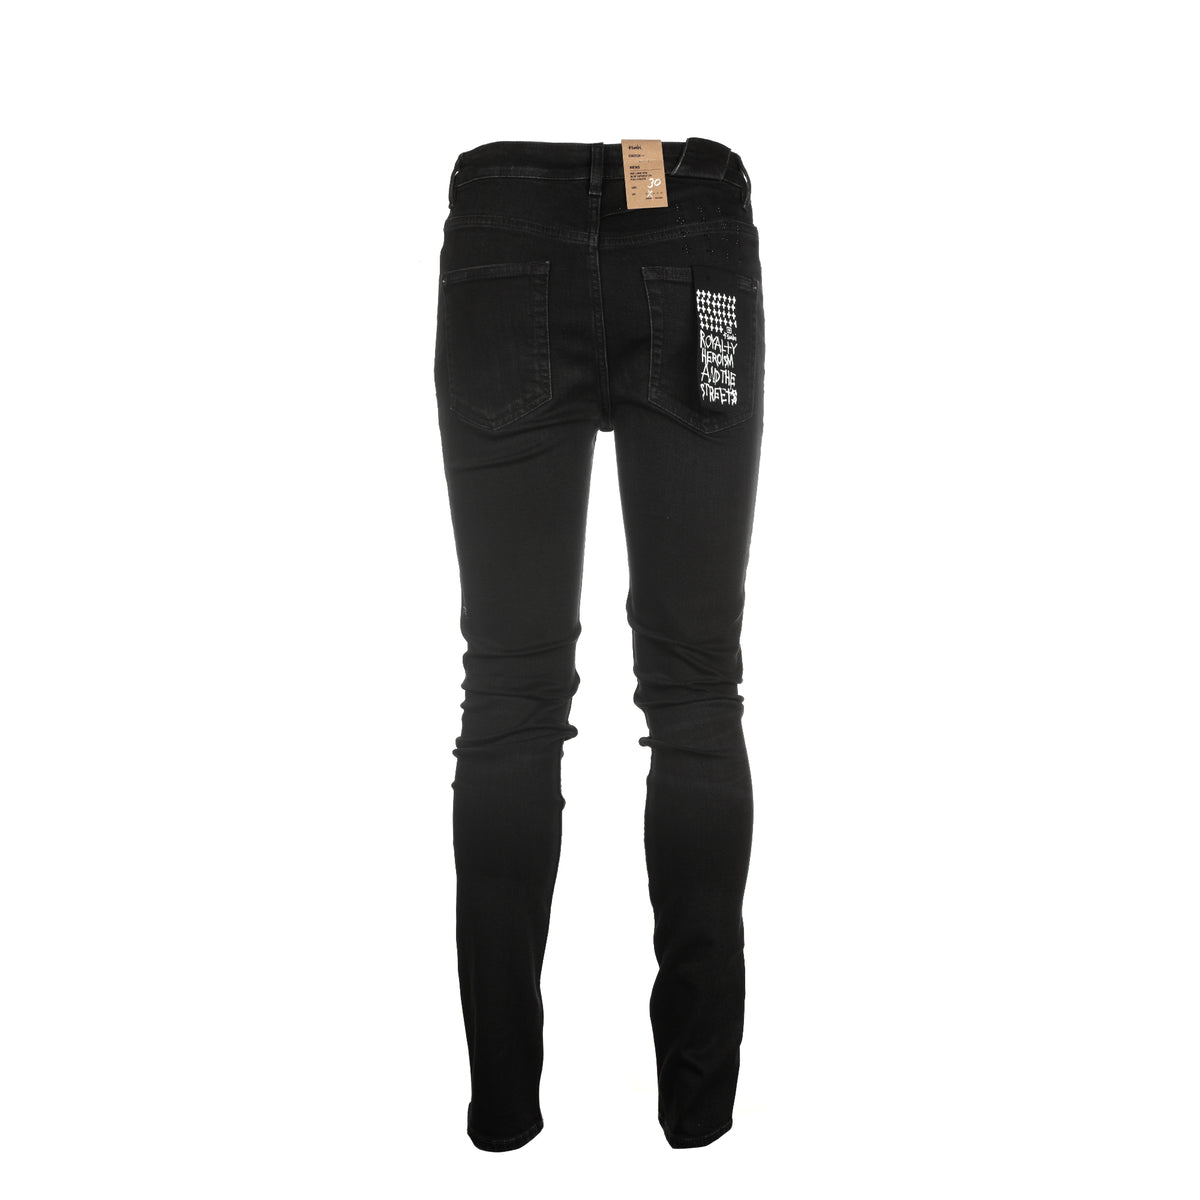 Ksubi Chitch Apex Krystal Men's Black Jeans - SIZE Boutique